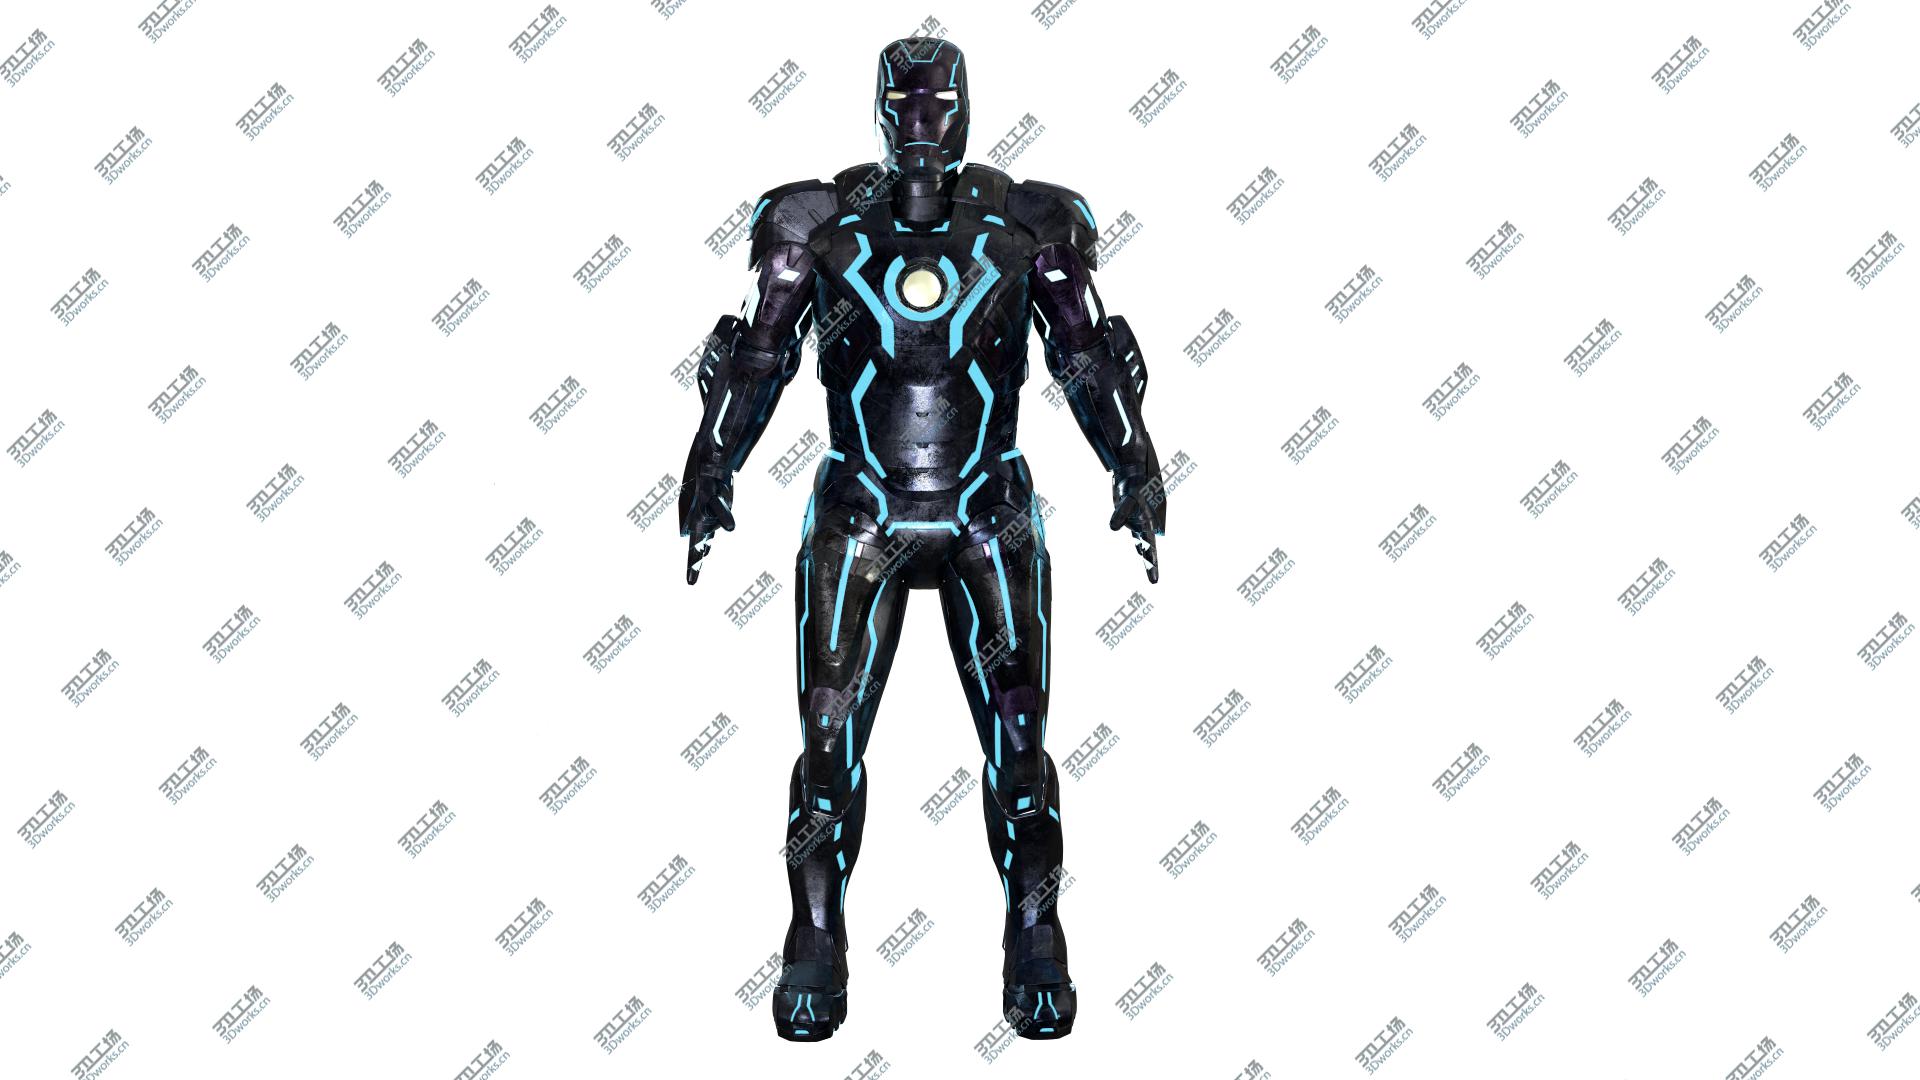 images/goods_img/202104093/3D Iron Man Mark VII model/3.jpg